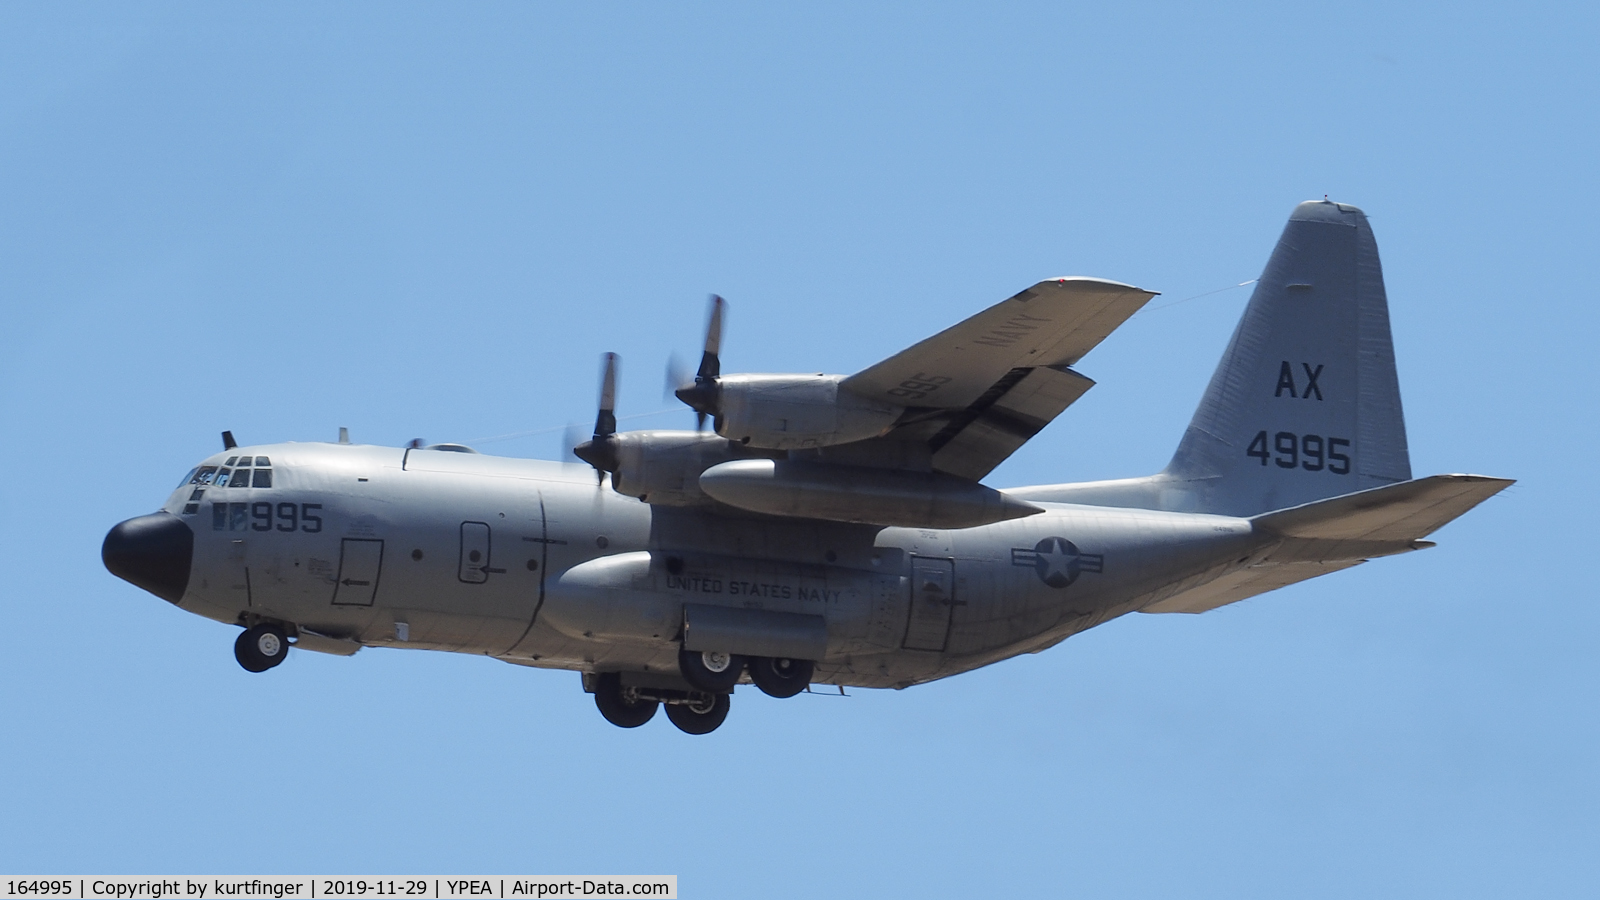 164995, Lockheed C-130T Hercules C/N 382-5300, US Navy C-130T MSN 382-5300 VR-53 tail AX serial 4995 RAAF Base Pearce 29/11/19.